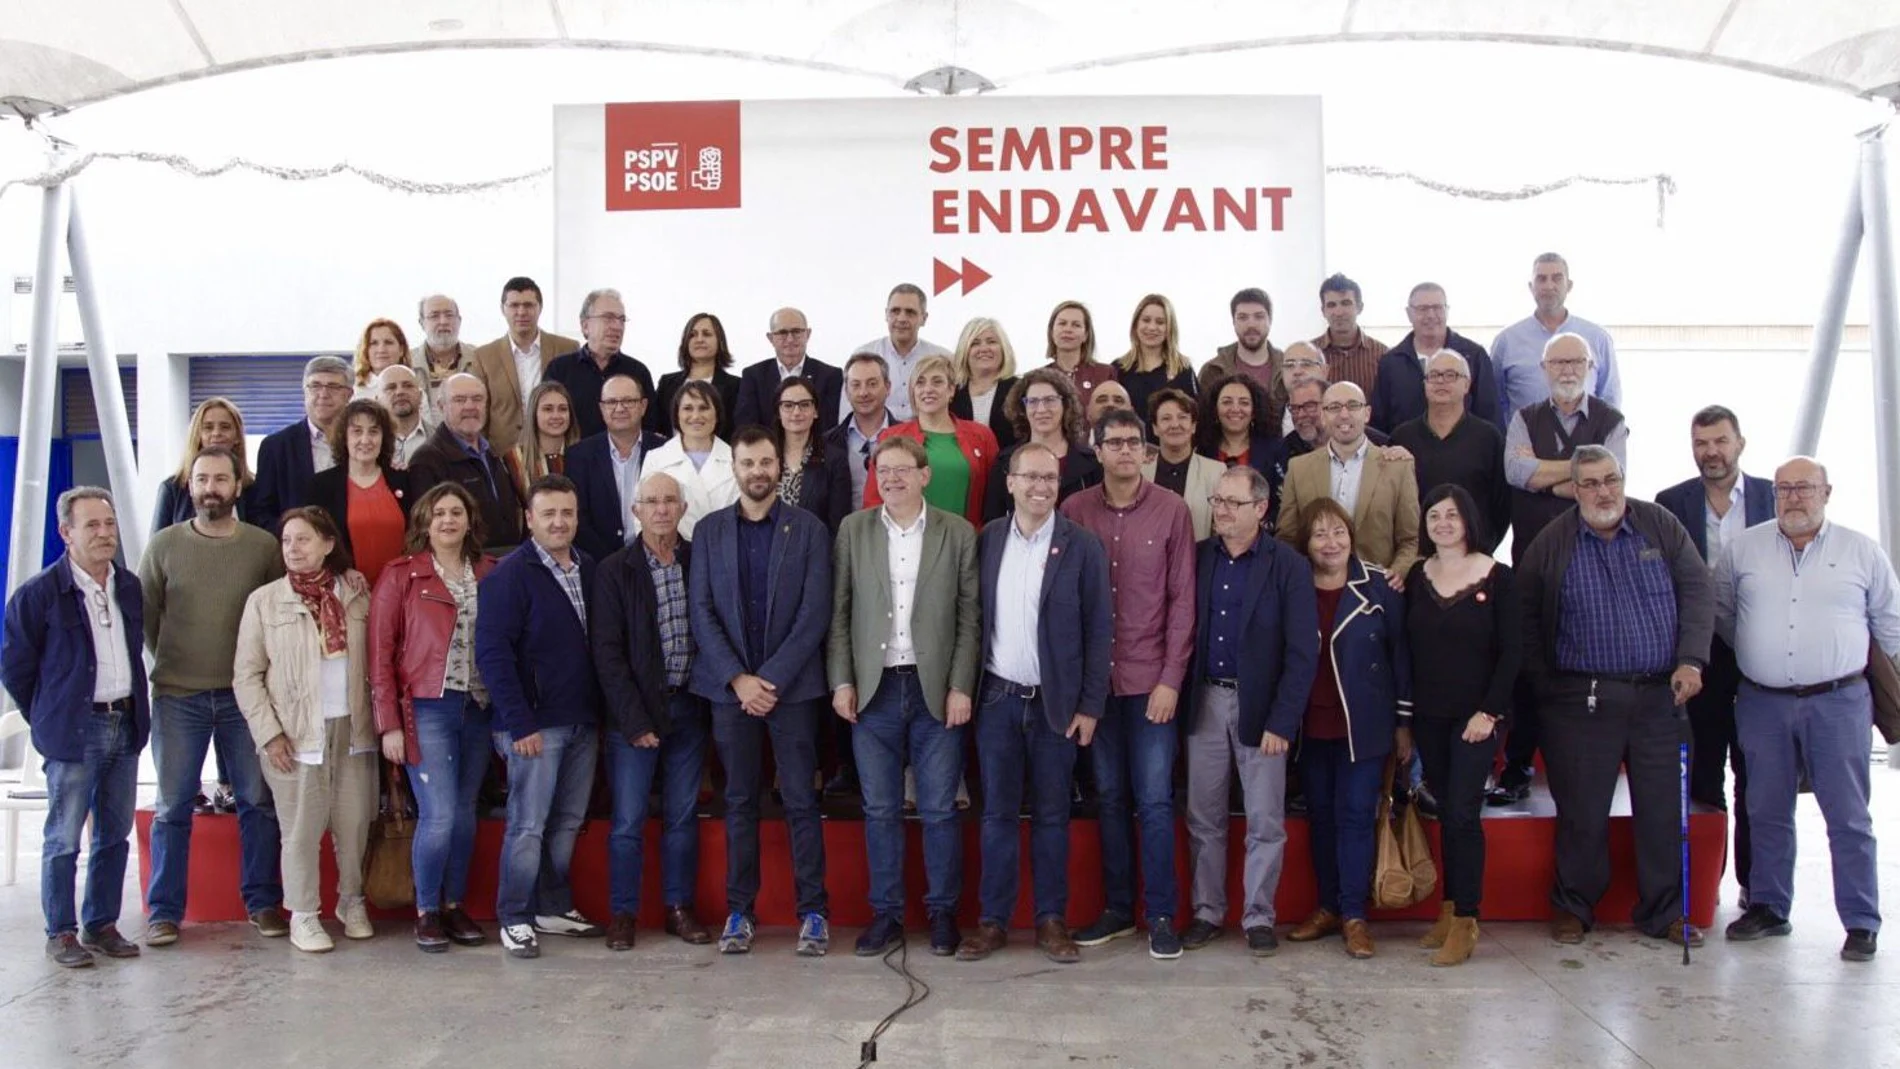 Puig participó ayer en el acto oficial de presentación de las candidaturas municipales del PSPV-PSOE en la provincia de Castellón que se celebró en Vinaròs